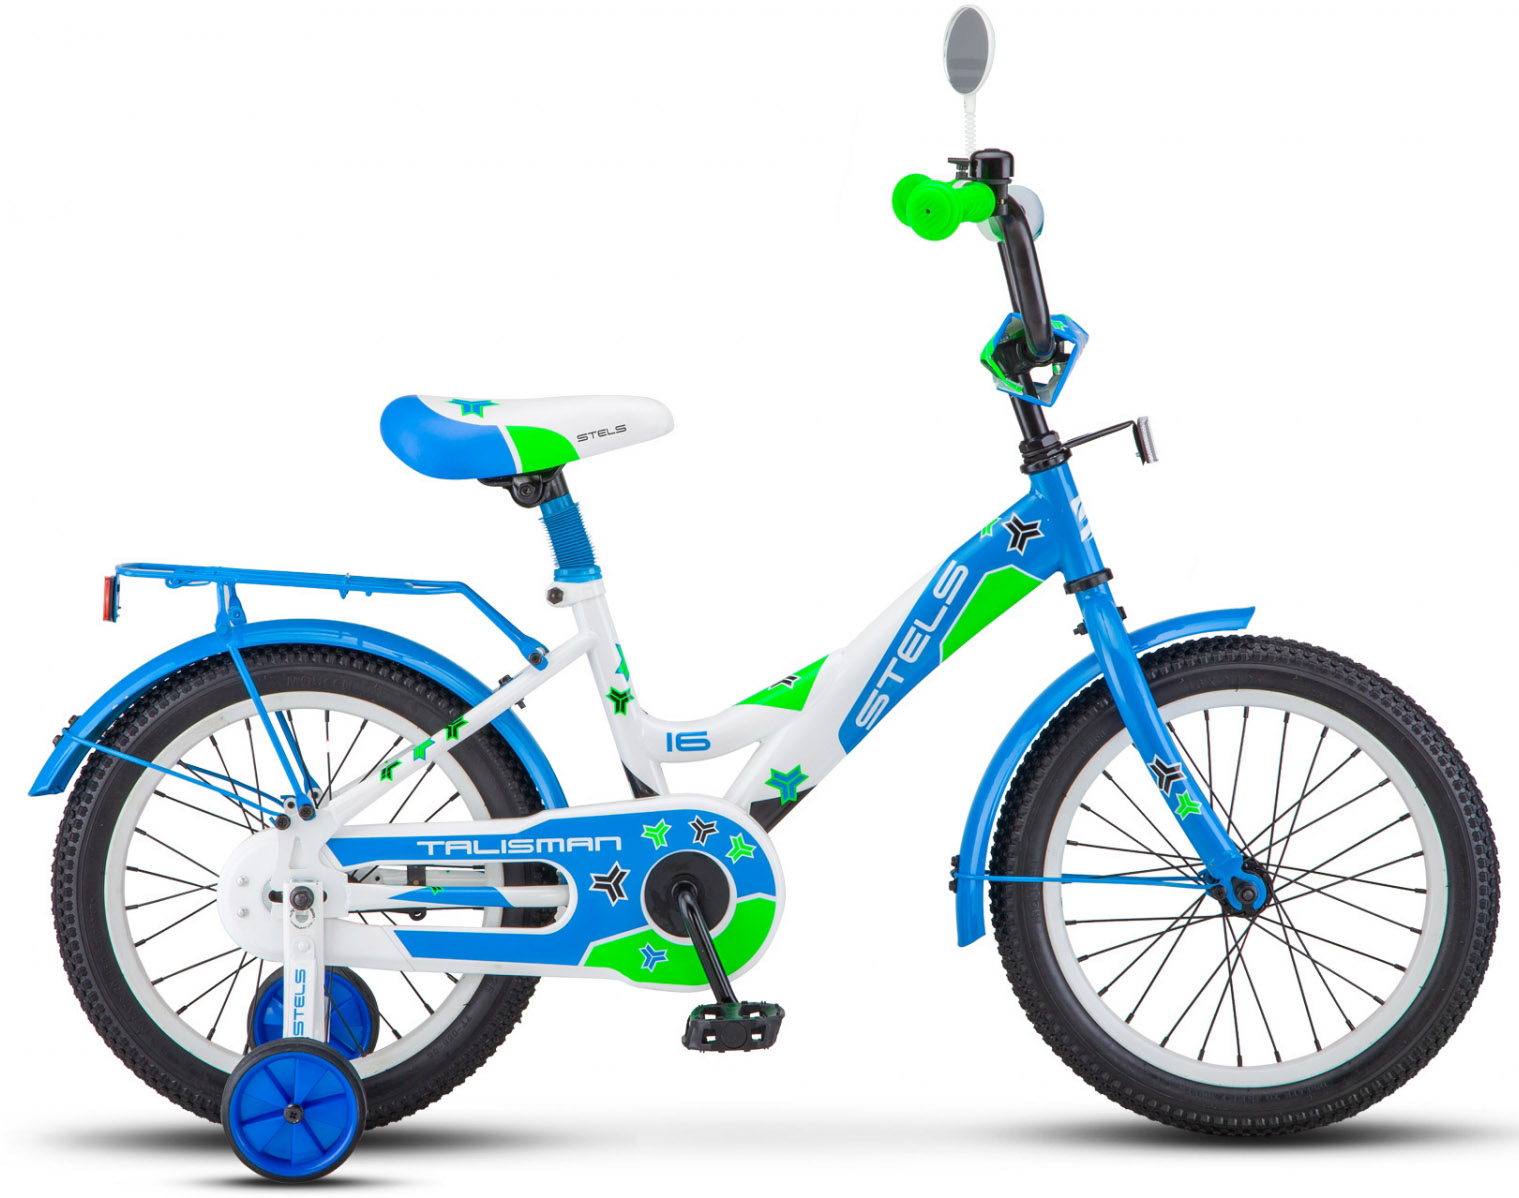  Отзывы о Трехколесный детский велосипед Stels Talisman 16 (Z010) 2018